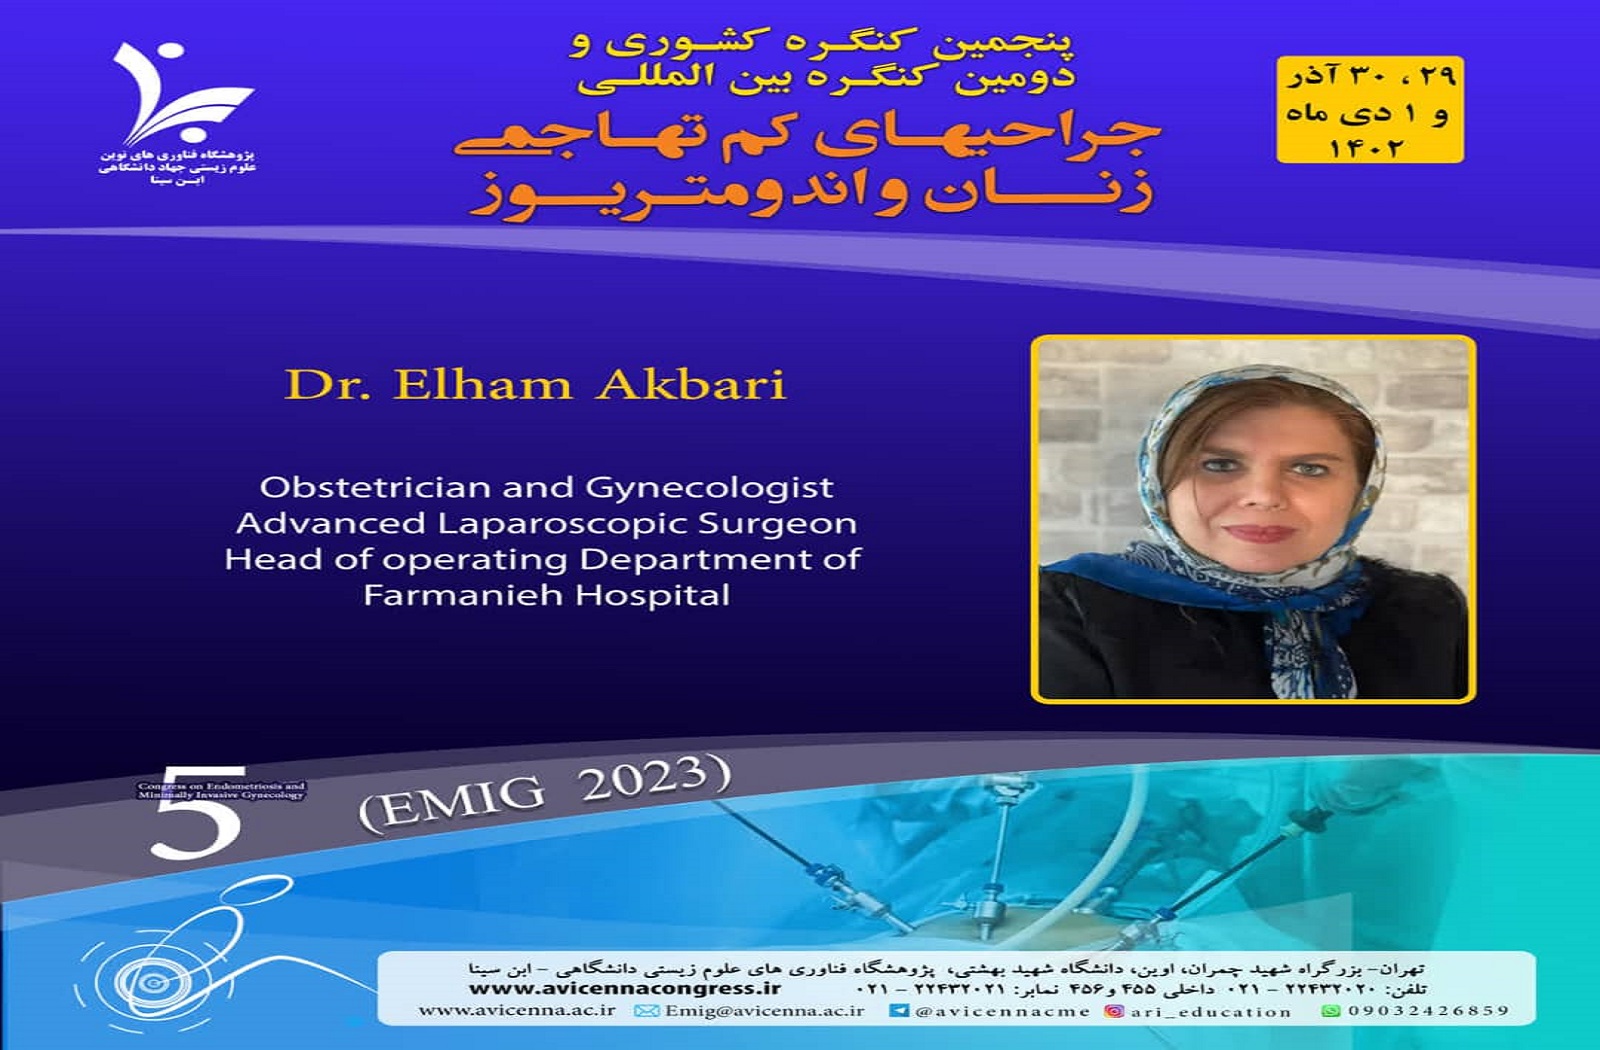 معرفی سرکارخانم دکتر الهام اکبری به عنوان سخنران و عضو شرکت کننده در کنگره بین المللی جراحی های کم تهاجمی زنان و اندومتریوز